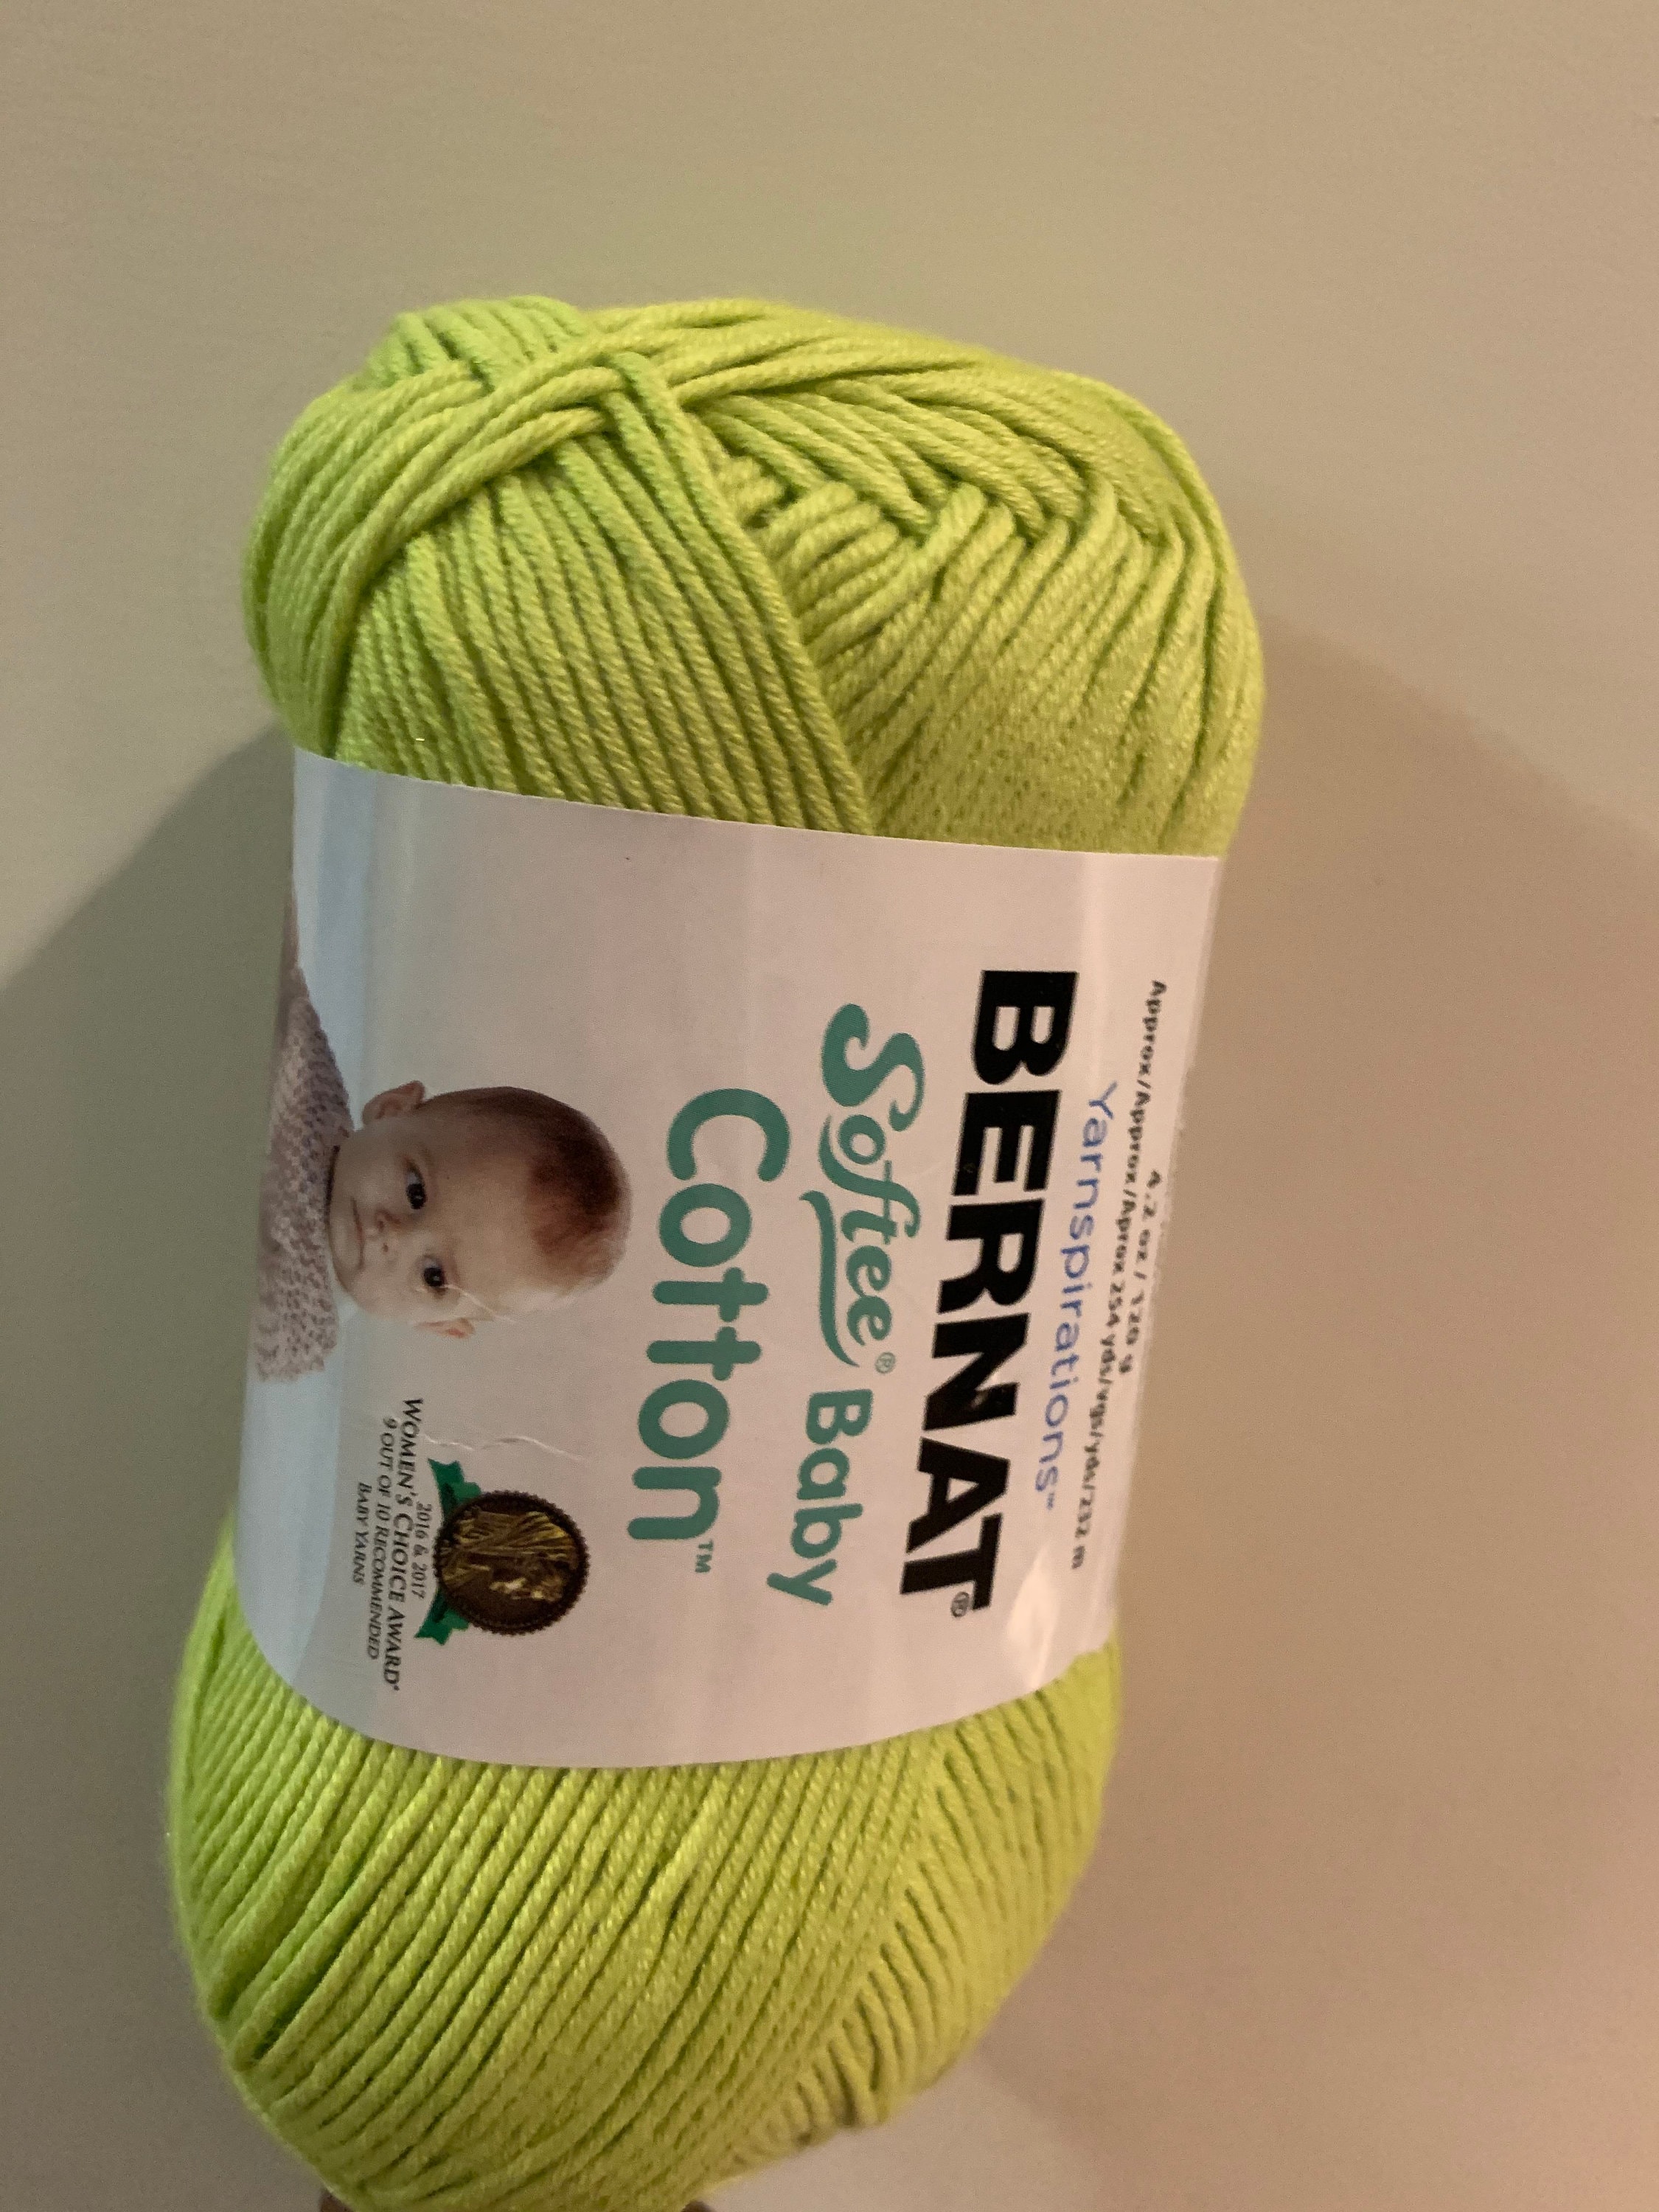 Bernat Softee Baby Yarn - Solids Little Mouse